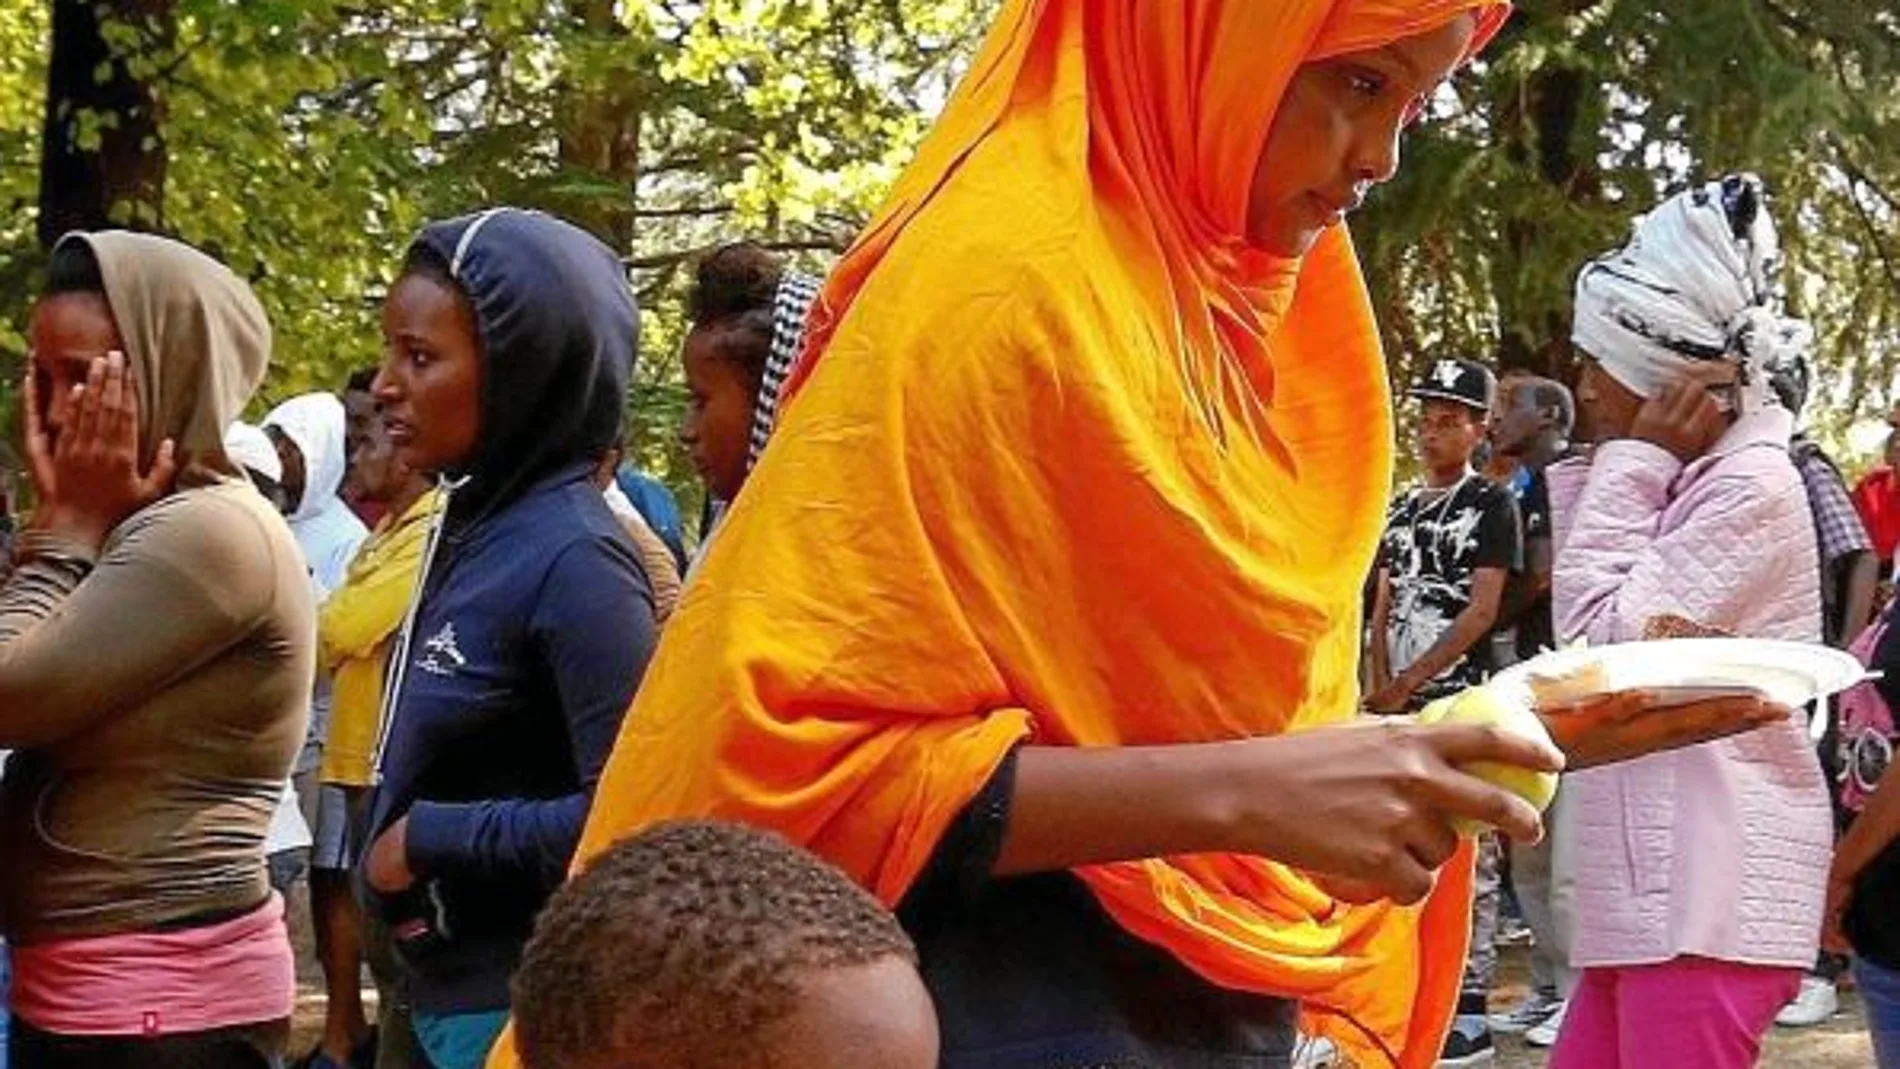 Voluntarios reparten comida entre los refugiados en un parque de Como